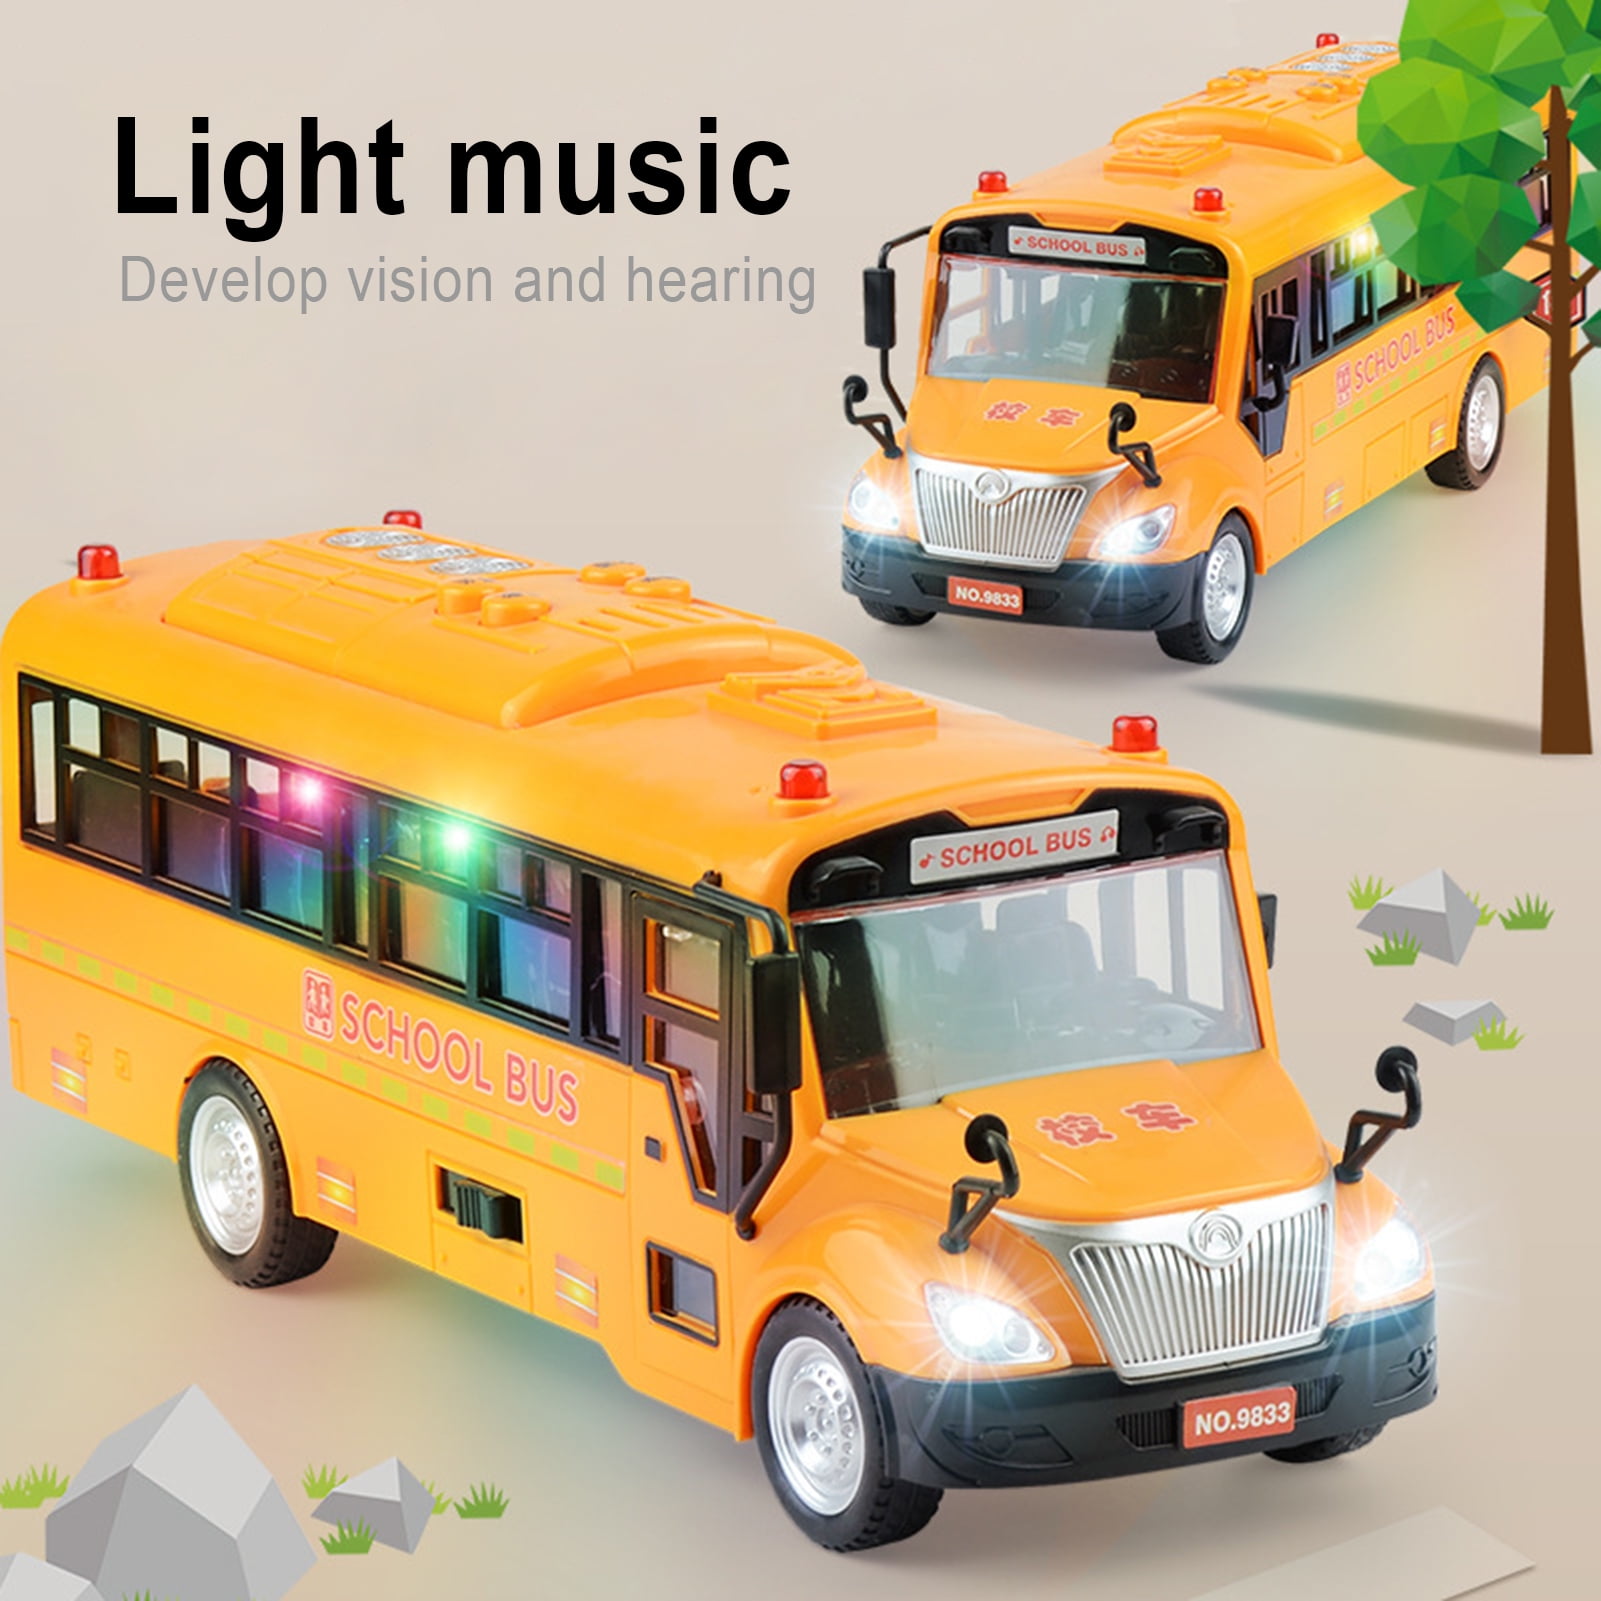 Bump-n-go Details about   School Bus   Sounds & Music Lights 